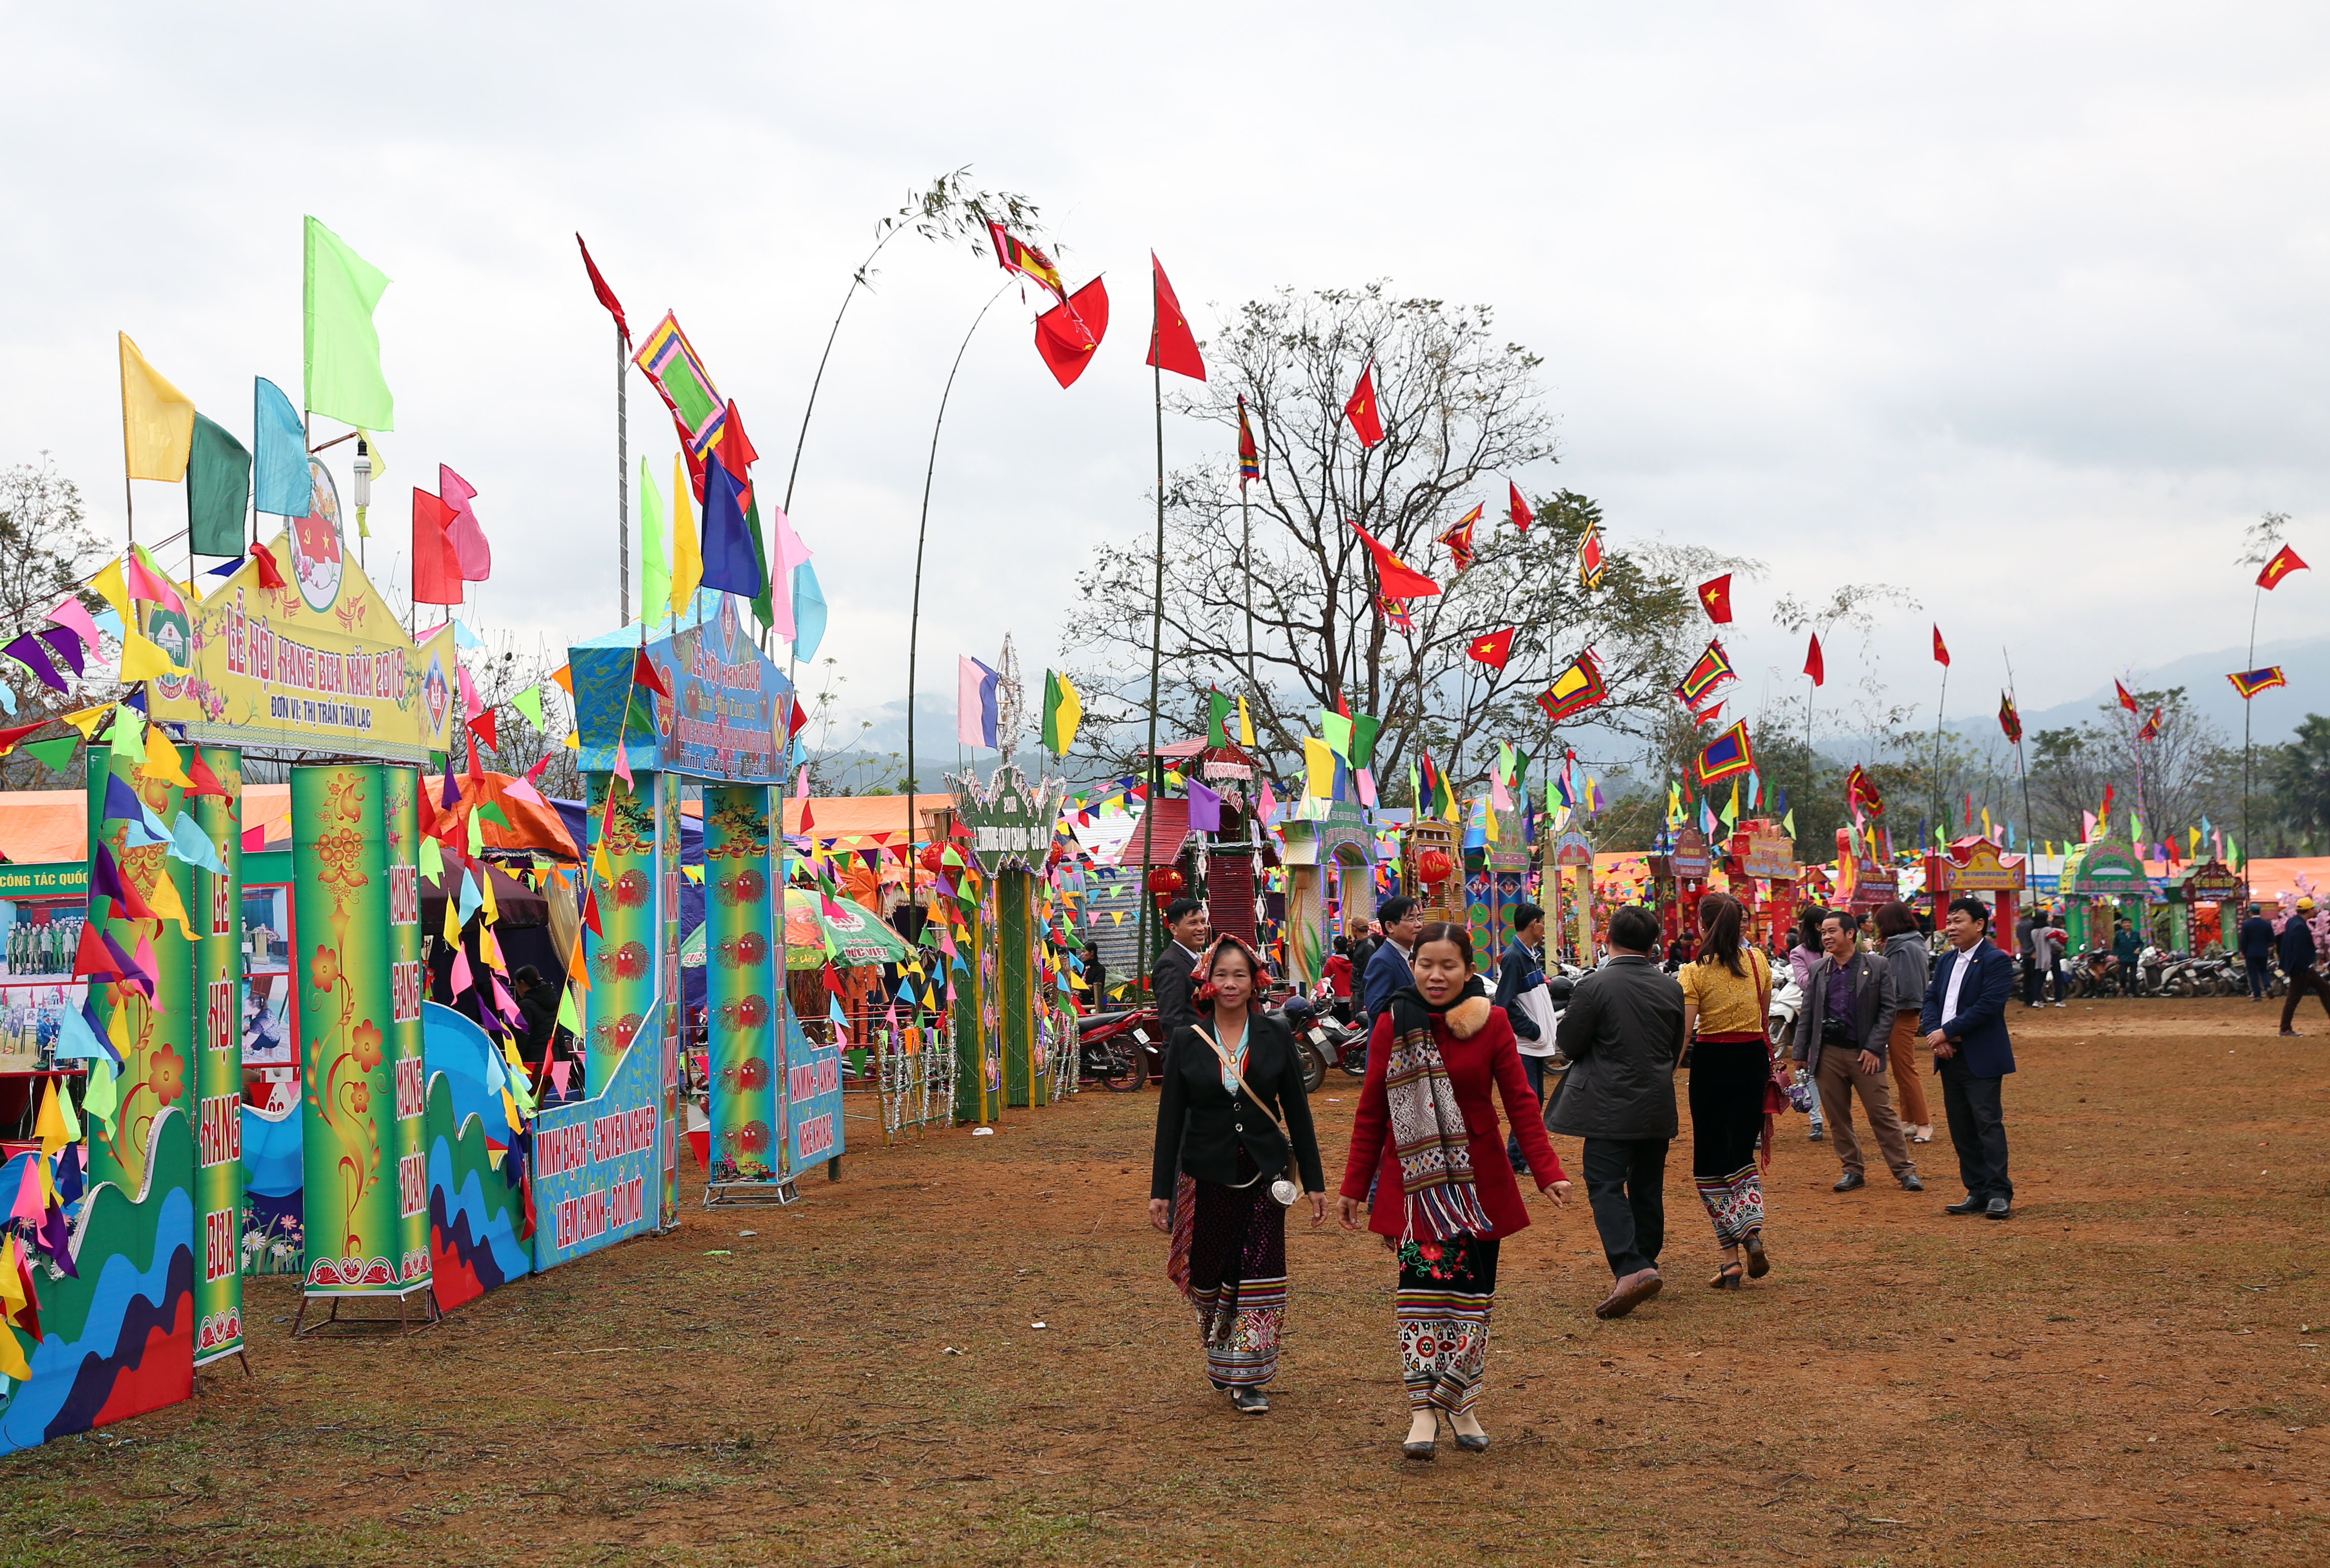 Lễ hội Hang Bua 2018 diễn ra từ ngày 7-9 tháng 3. Lễ hội phô diễn đầy đủ các nét văn hóa đặc sắc của người dân tộc Thái. Ảnh: Hồ Phương